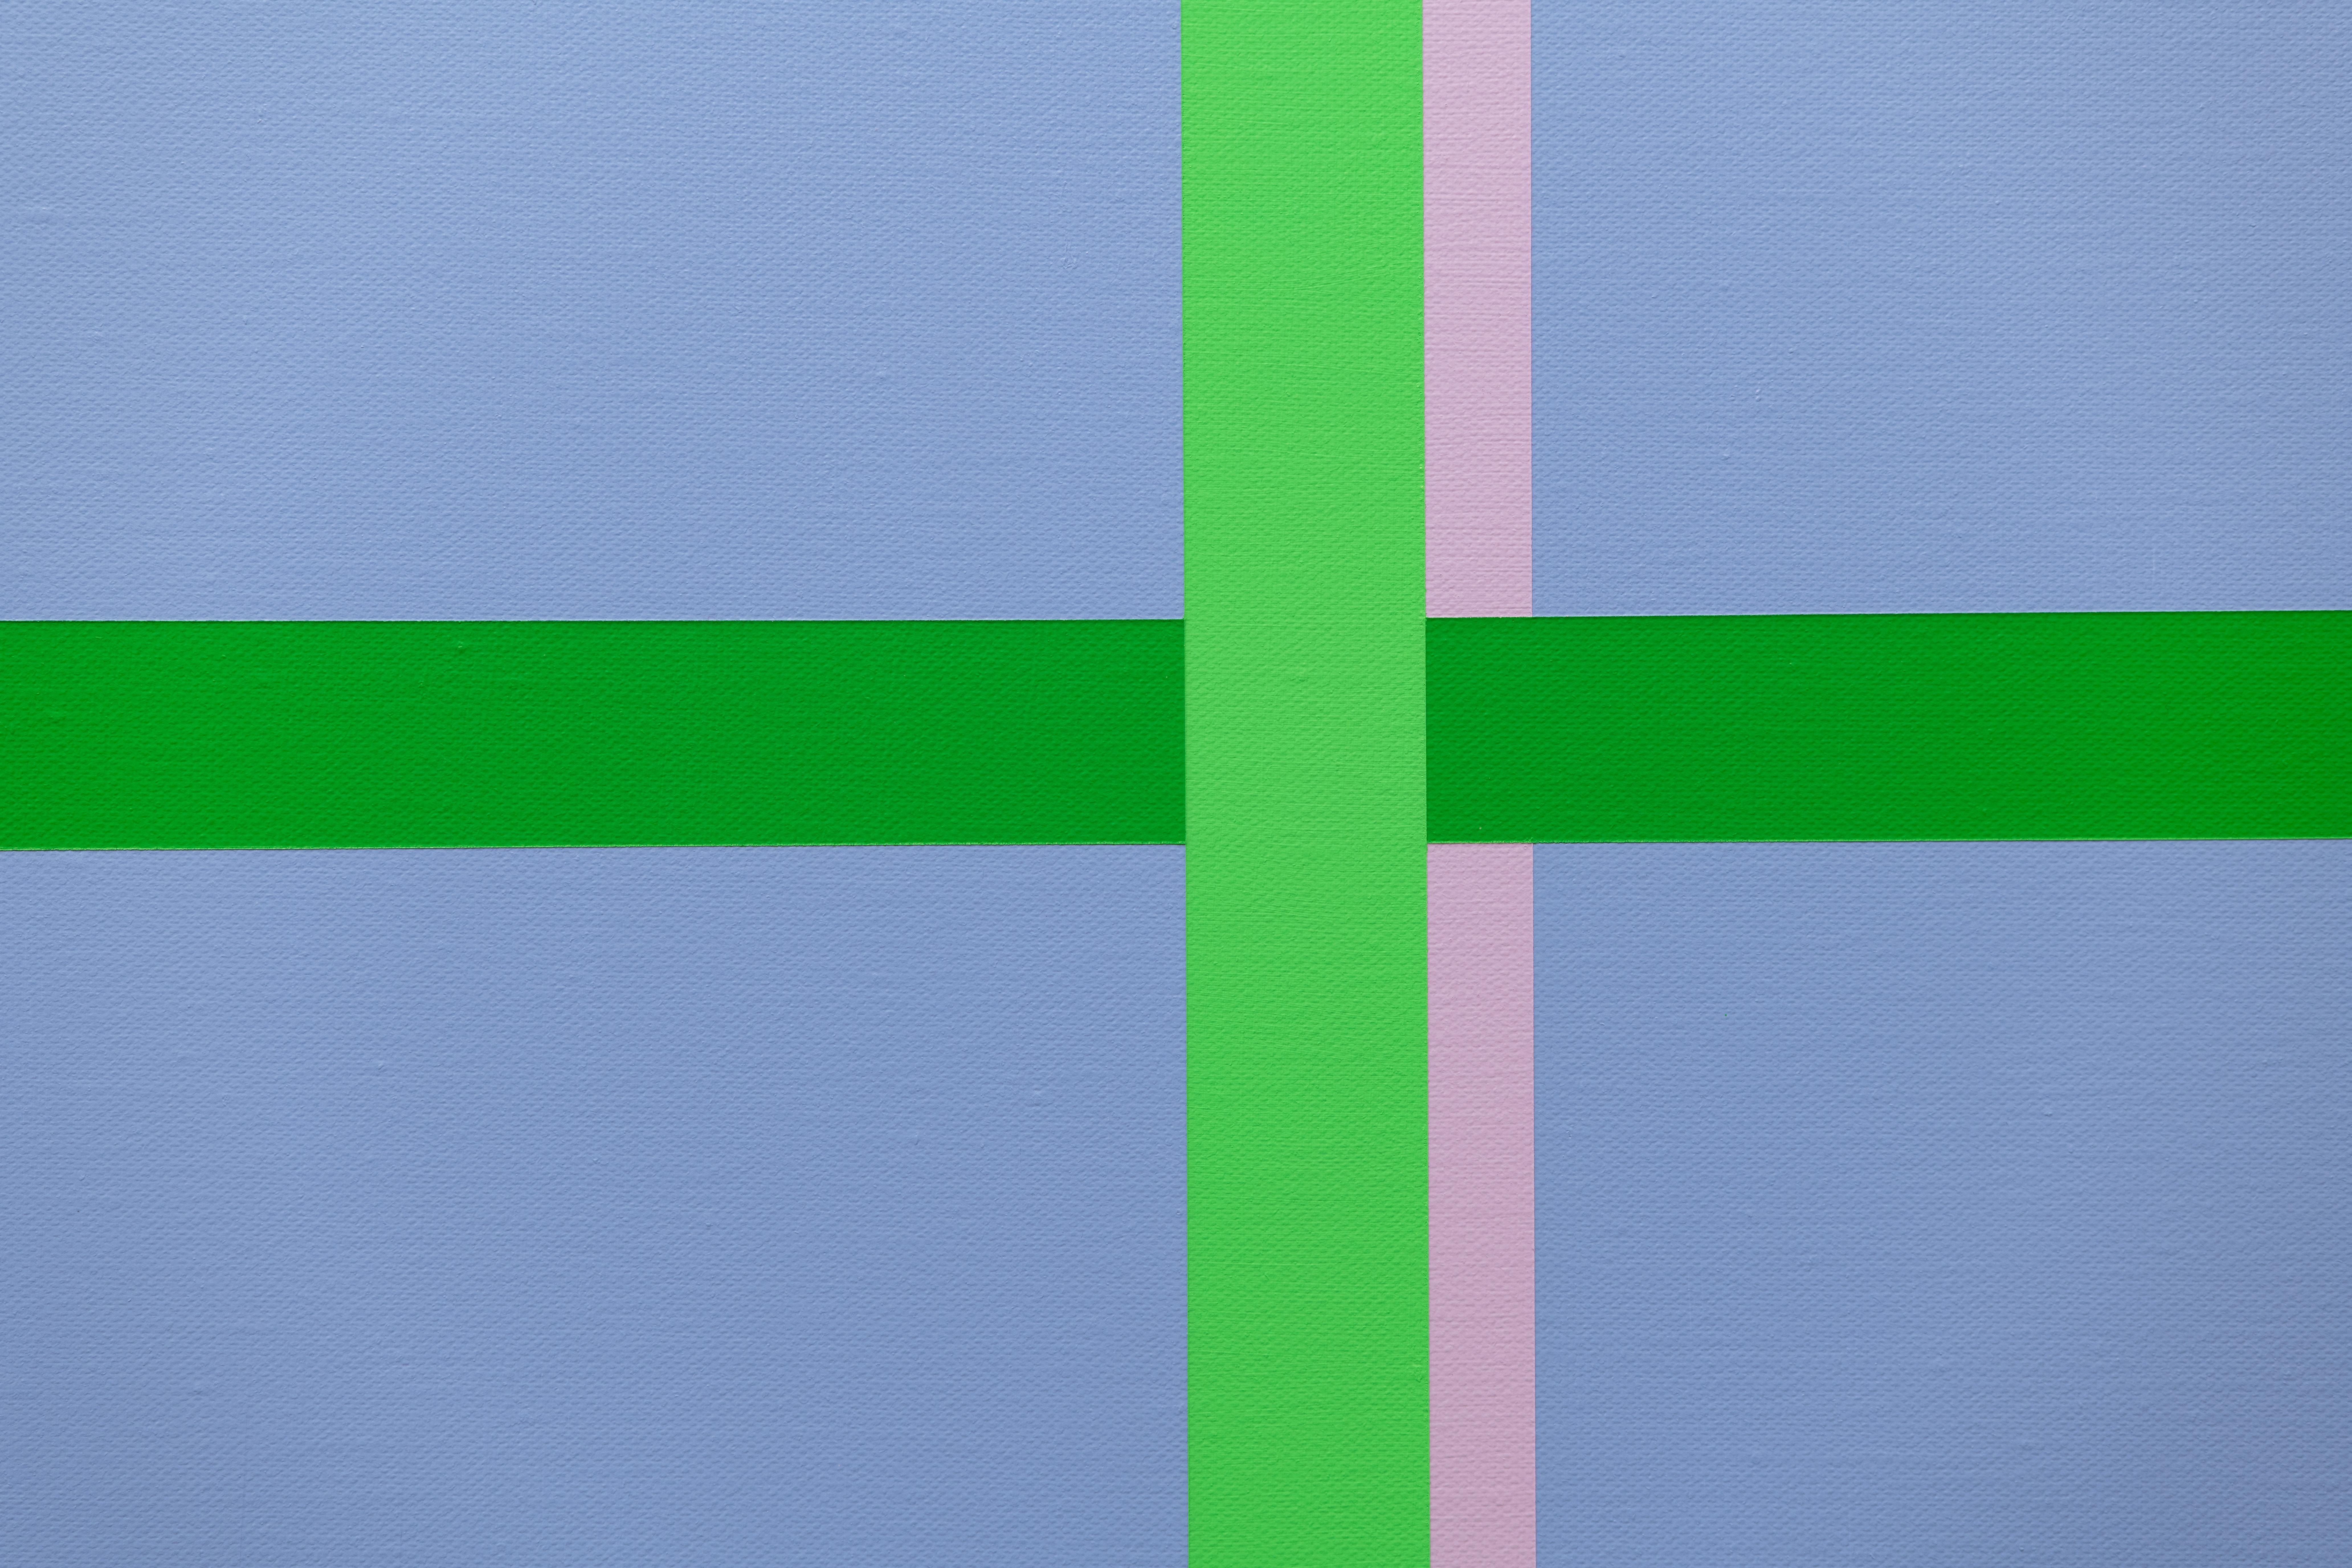 <p>Kommentare des Künstlers<br>Ein grünes Fenster gibt den Blick frei auf einen heiteren Horizont in Blau- und Lavendeltönen. Die Anordnung der Formen und Farben erzeugt ein dynamisches Spiel von Licht und Schatten. Die abstrakte, aber